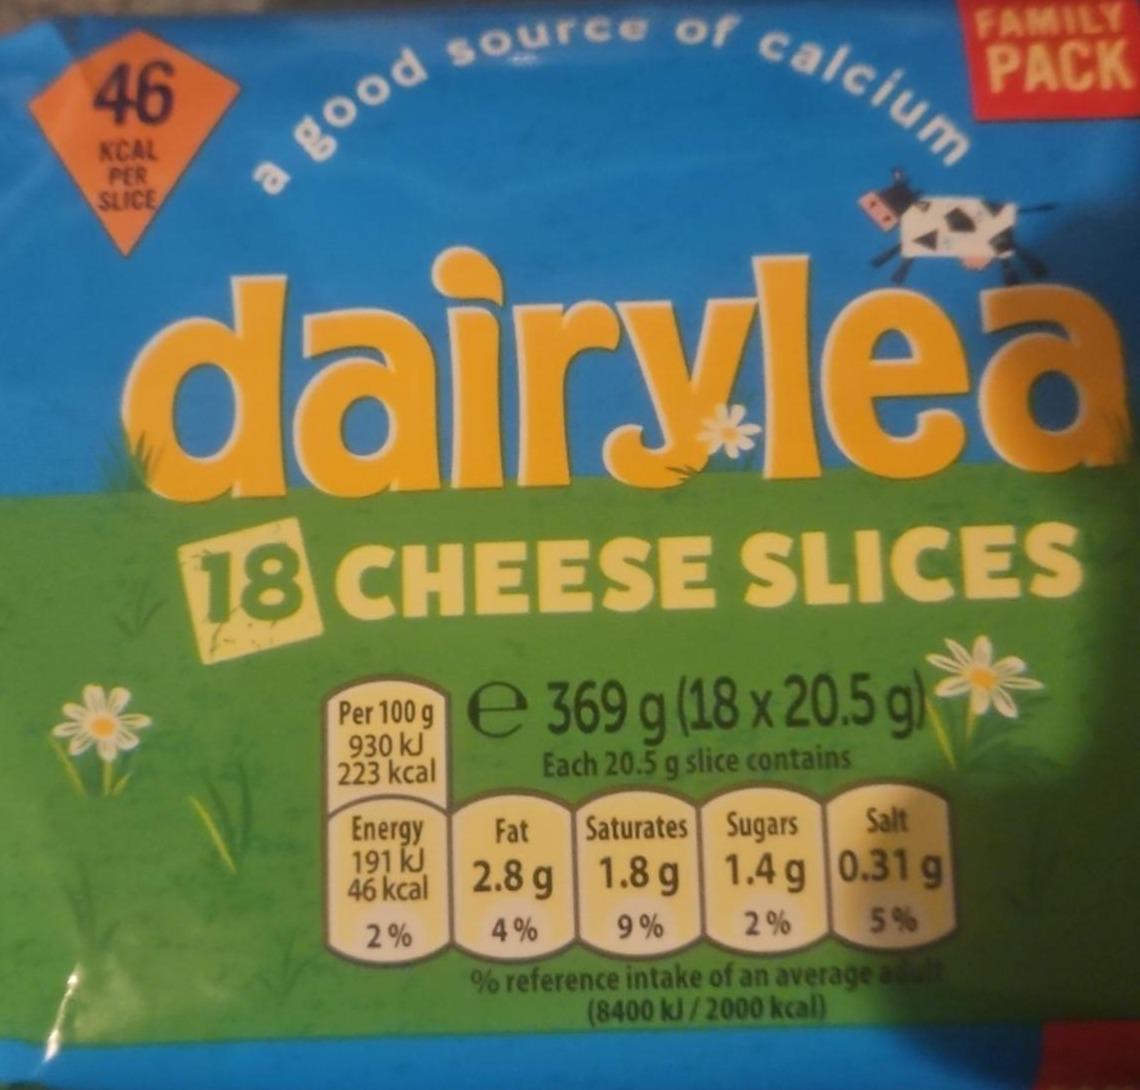 Zdjęcia - Cheese slices Dairylea